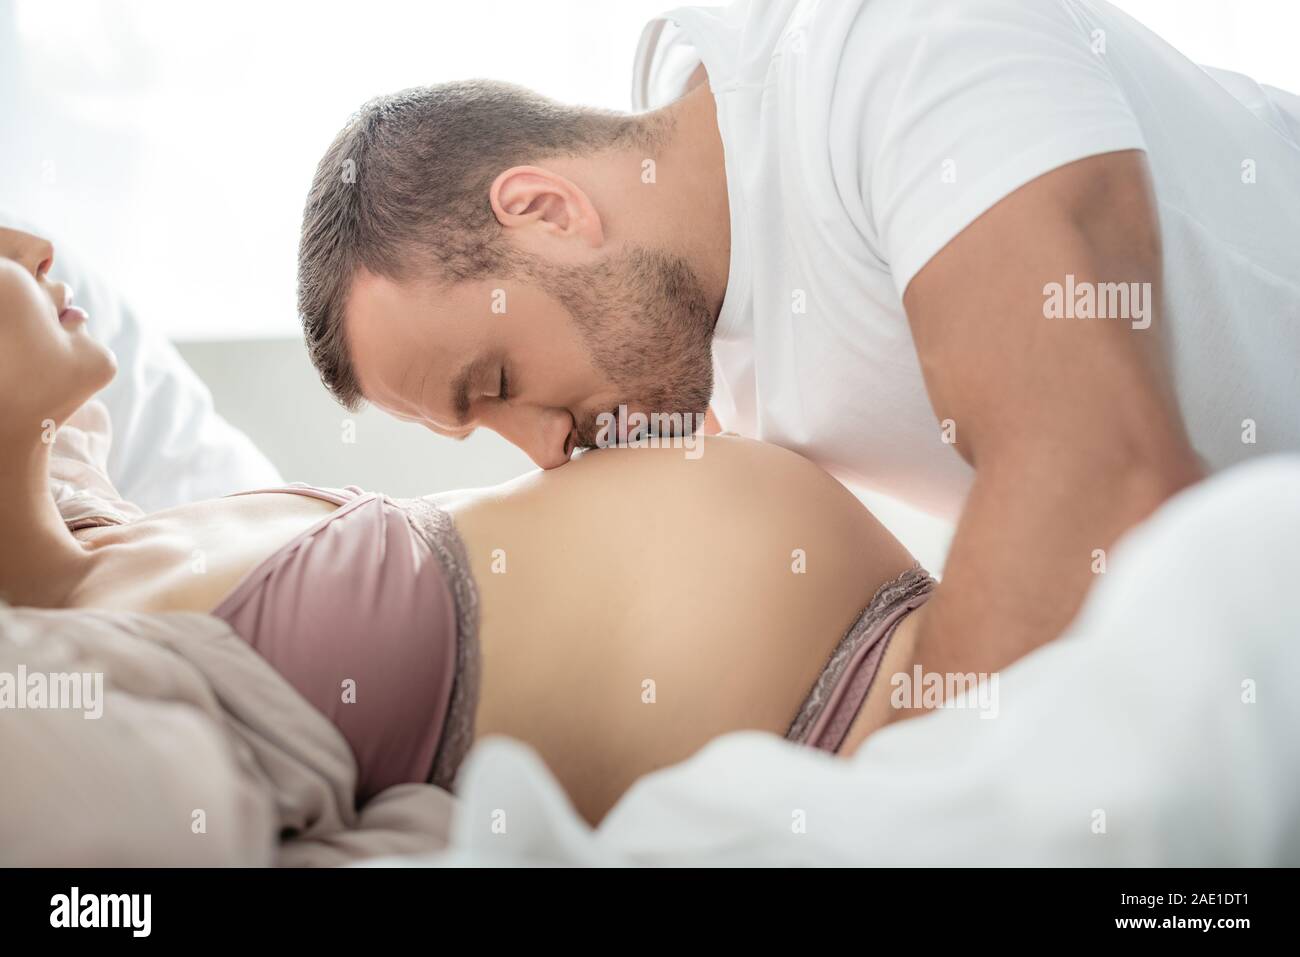 Abrazos y besos marido vientre de su esposa embarazada en la cama Foto de stock